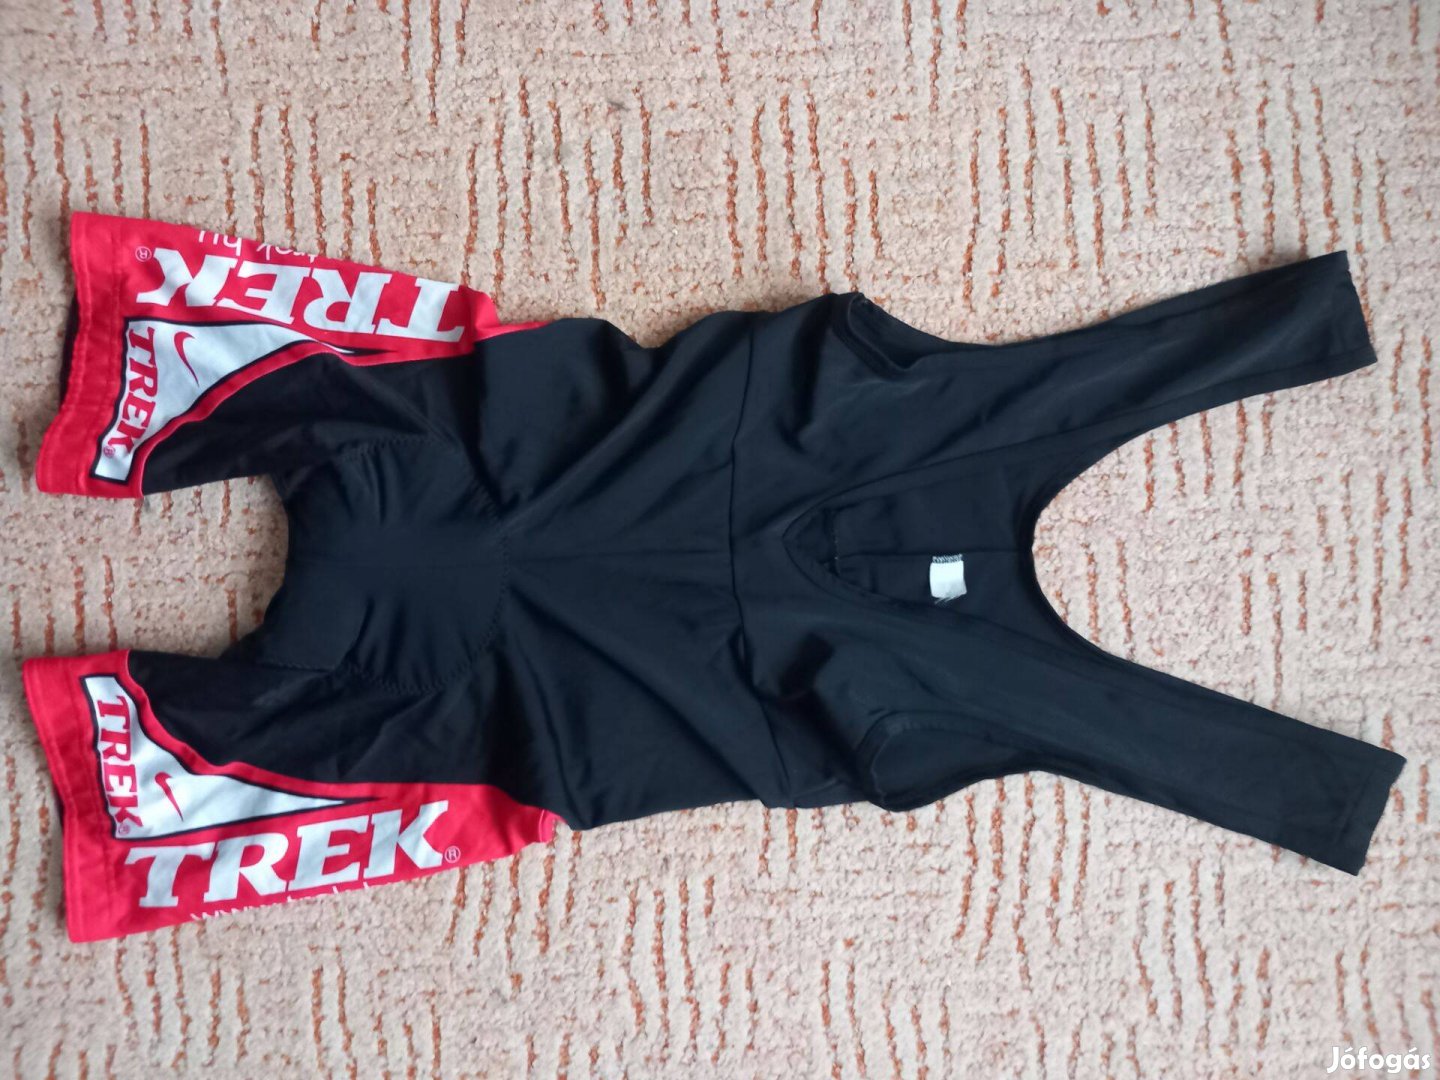 Nike Trek kerékpáros kantáros rövid nadrág fekete piros M-es